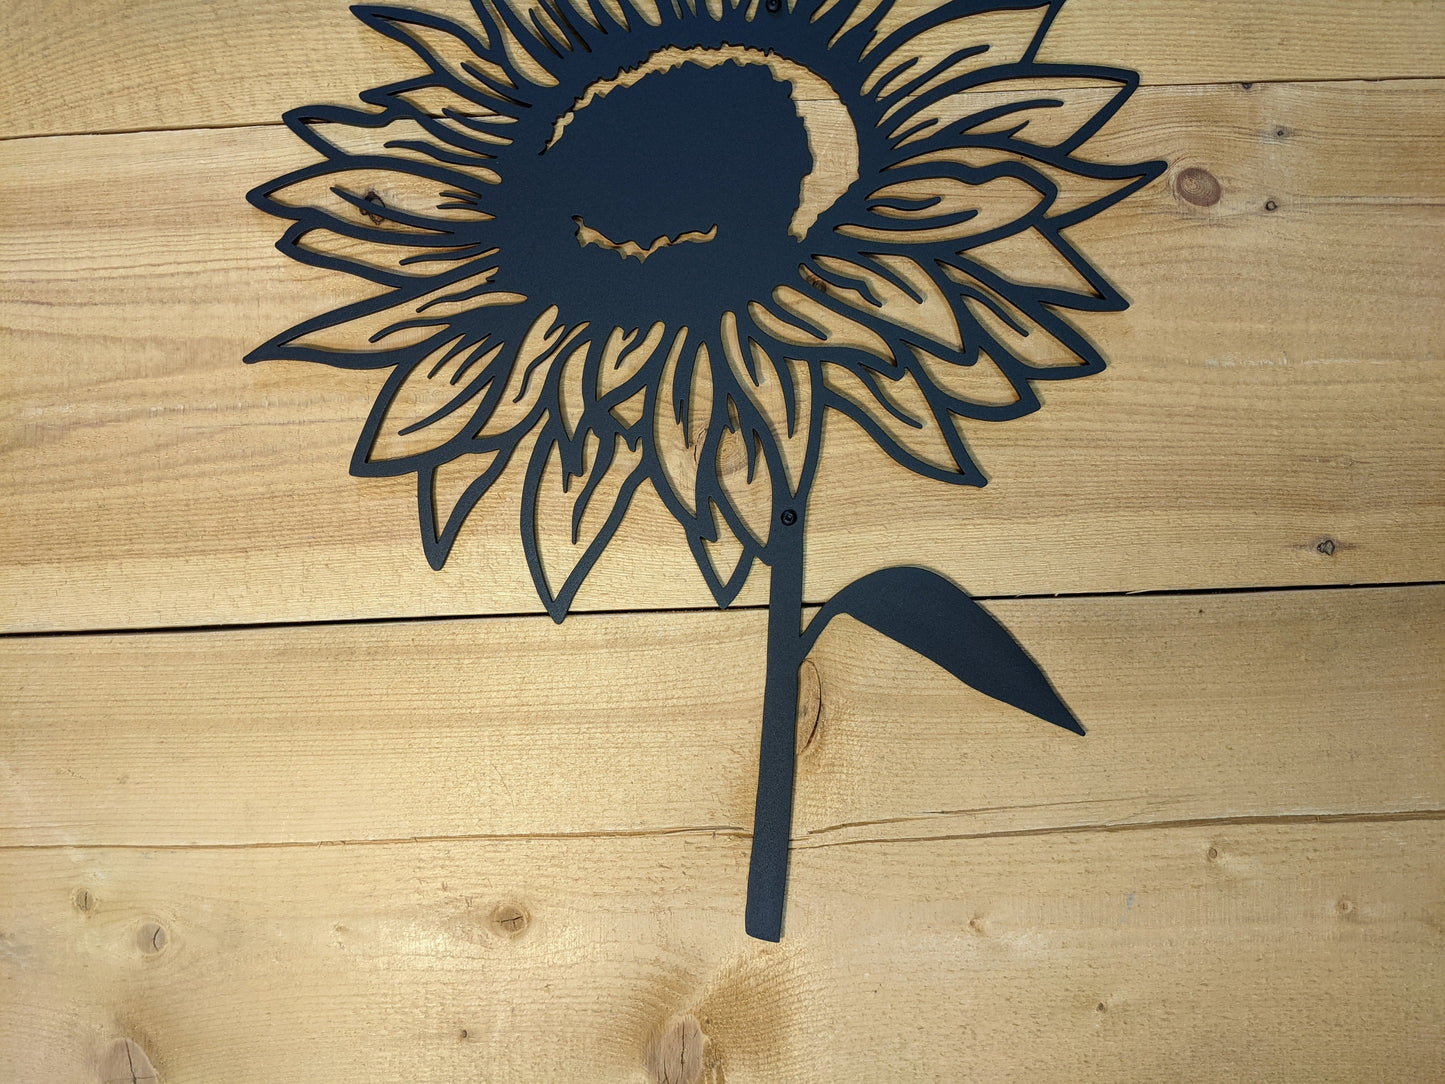 Sunflower - 18.5" Tall